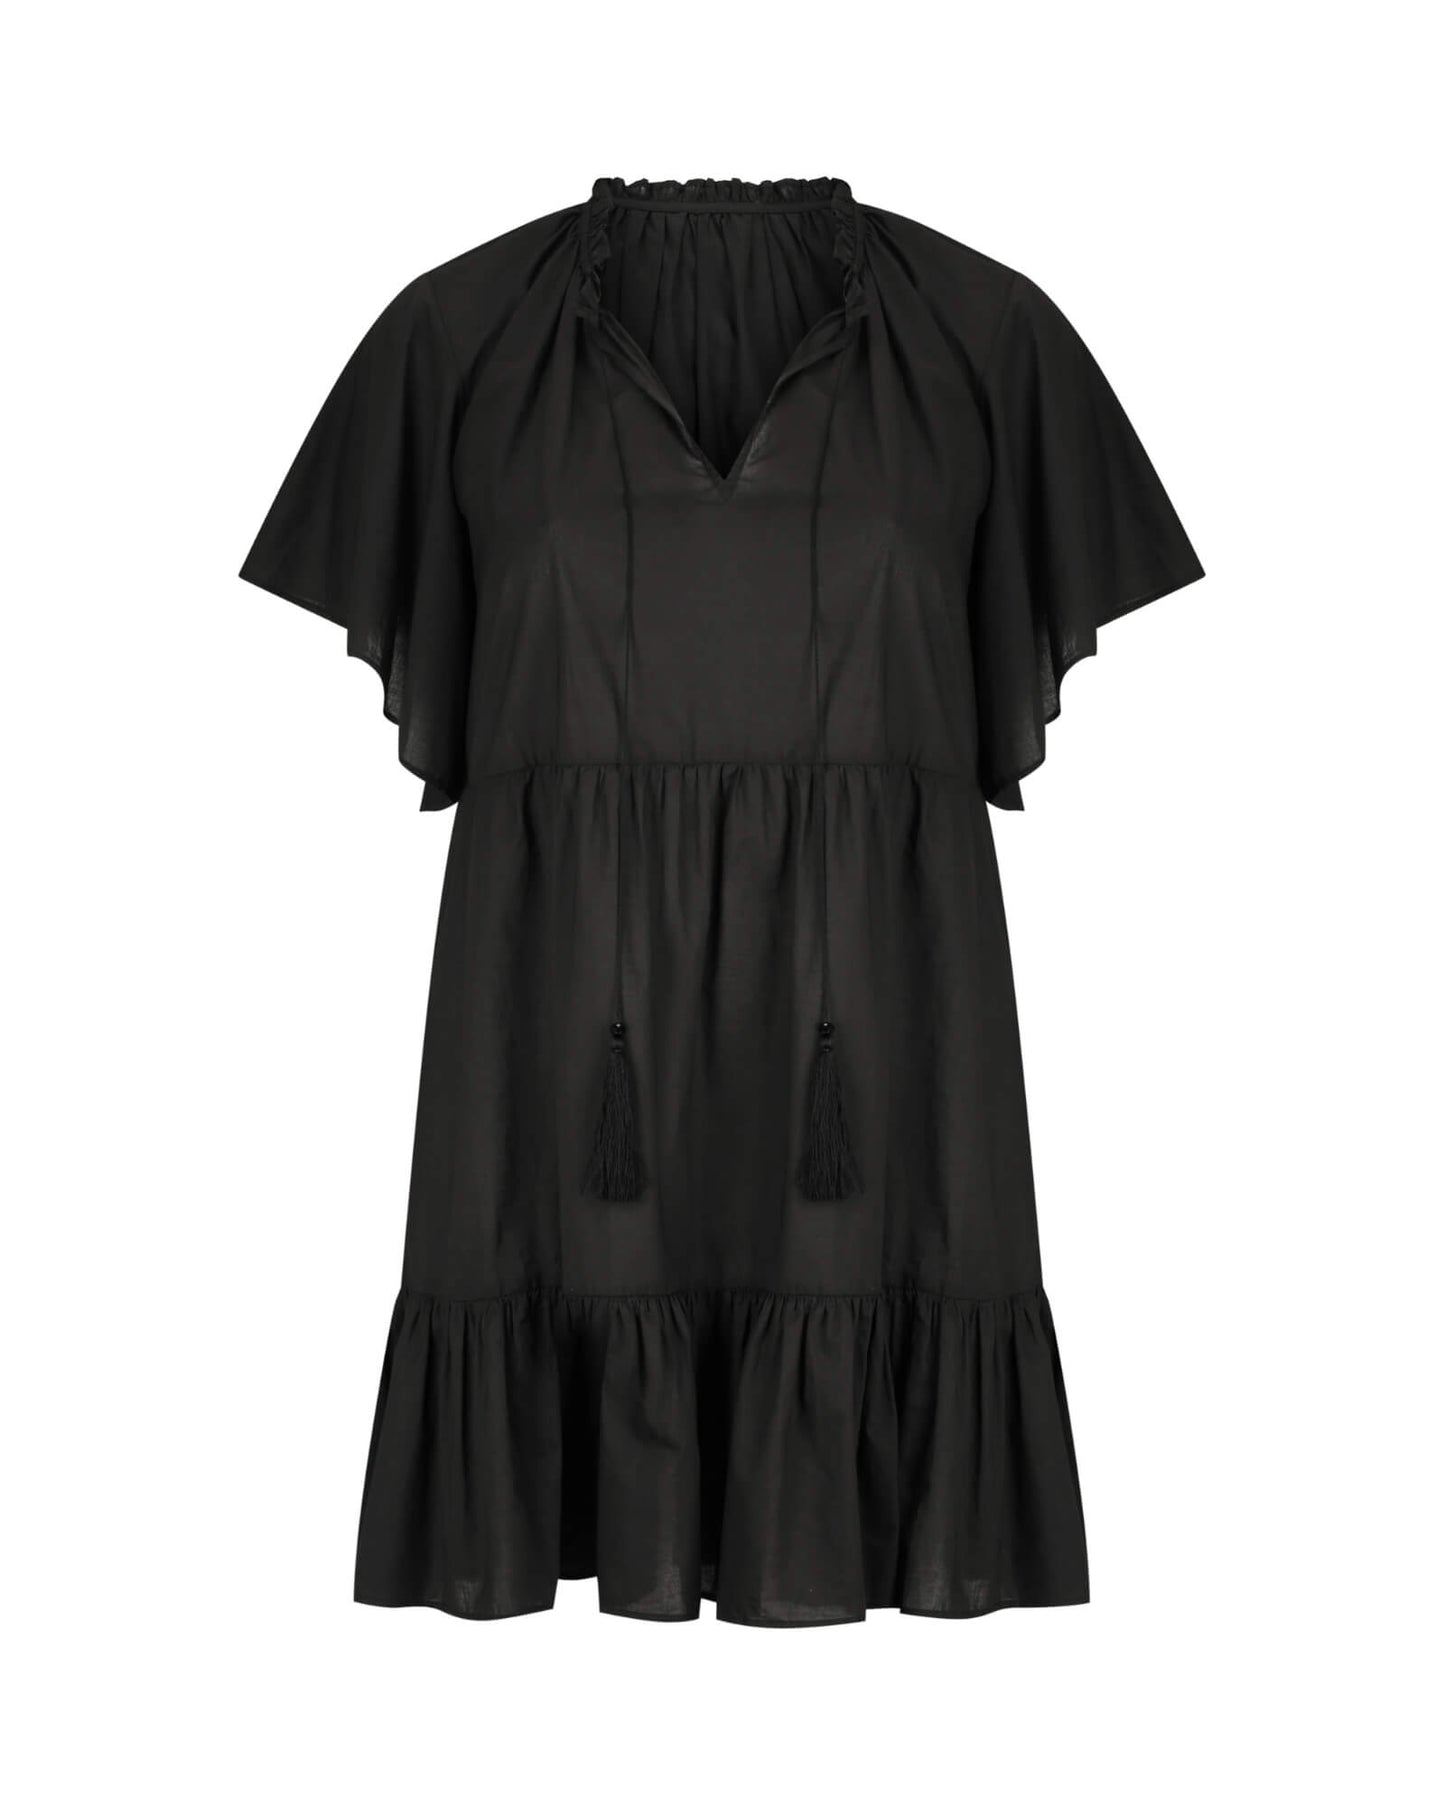 Jamie Short Sleeve Play Dress in Black